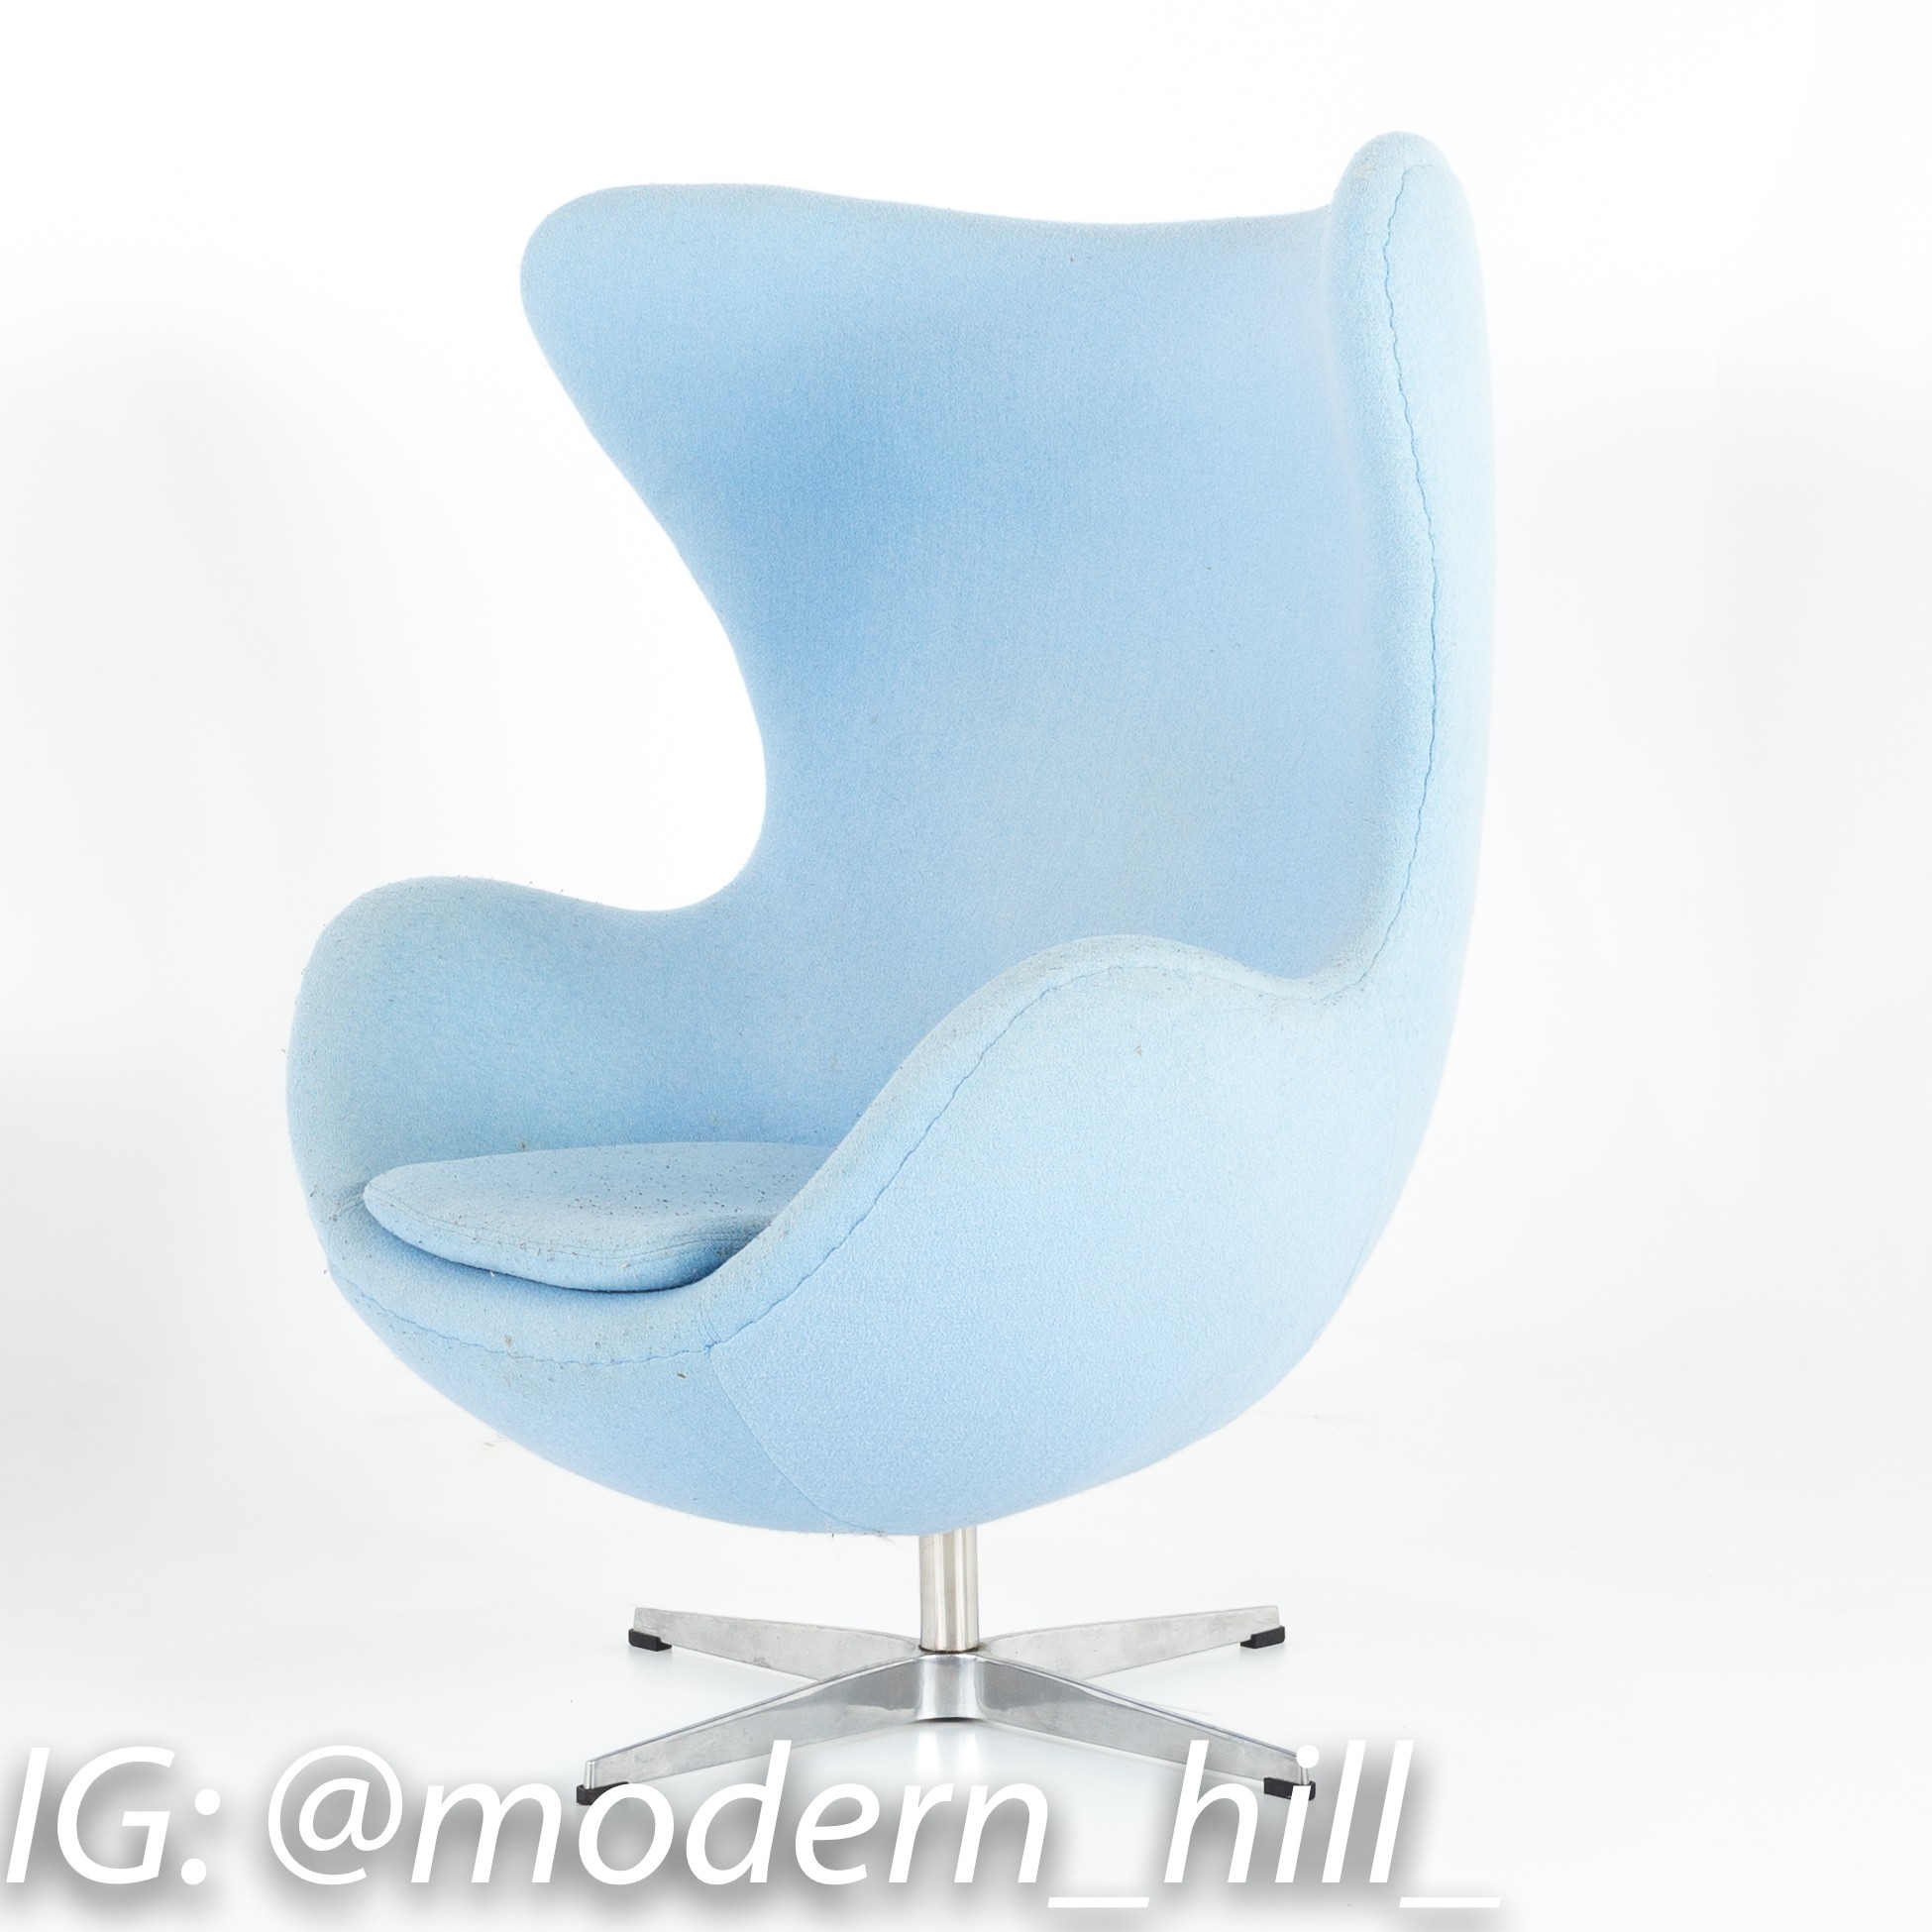 Arne Jacobsen for Fritz Hansen Style Mid Century Modern Egg Chair